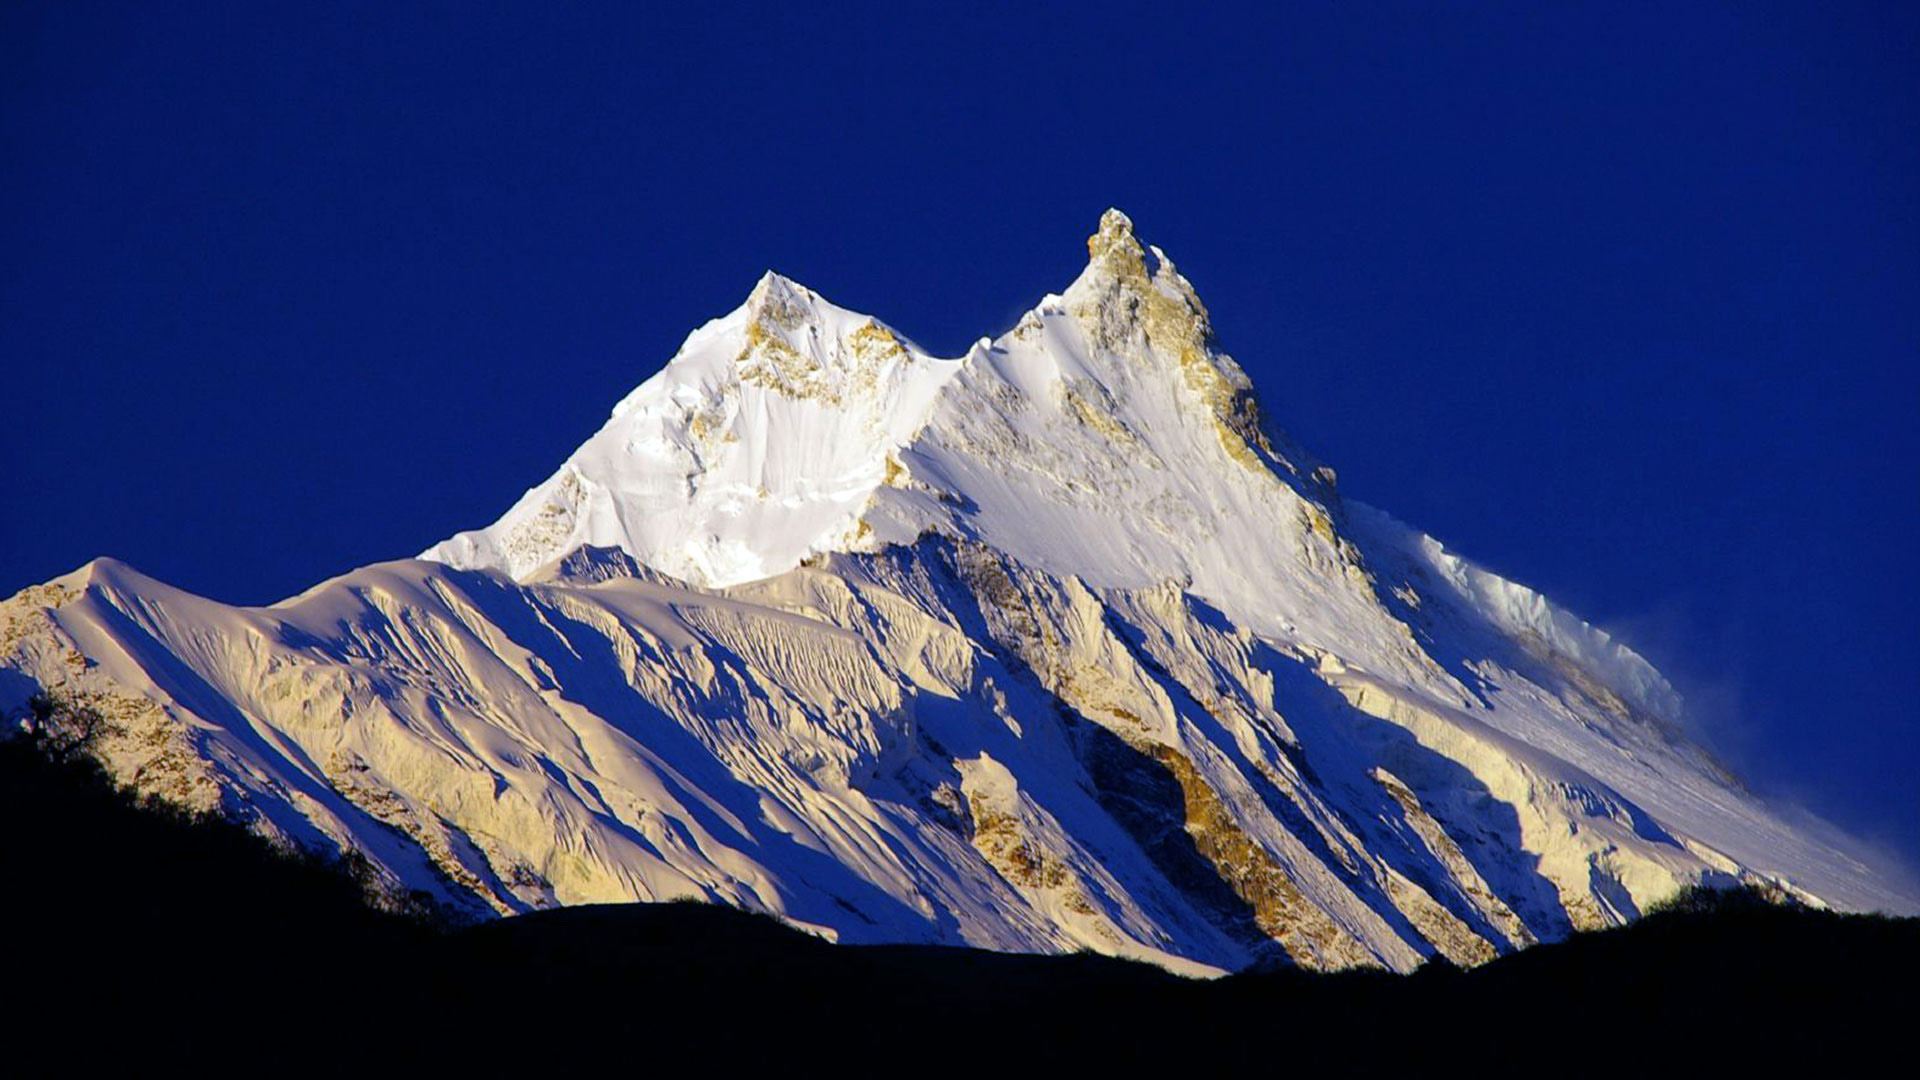 Lhakpa Sherpa-manasluPeak